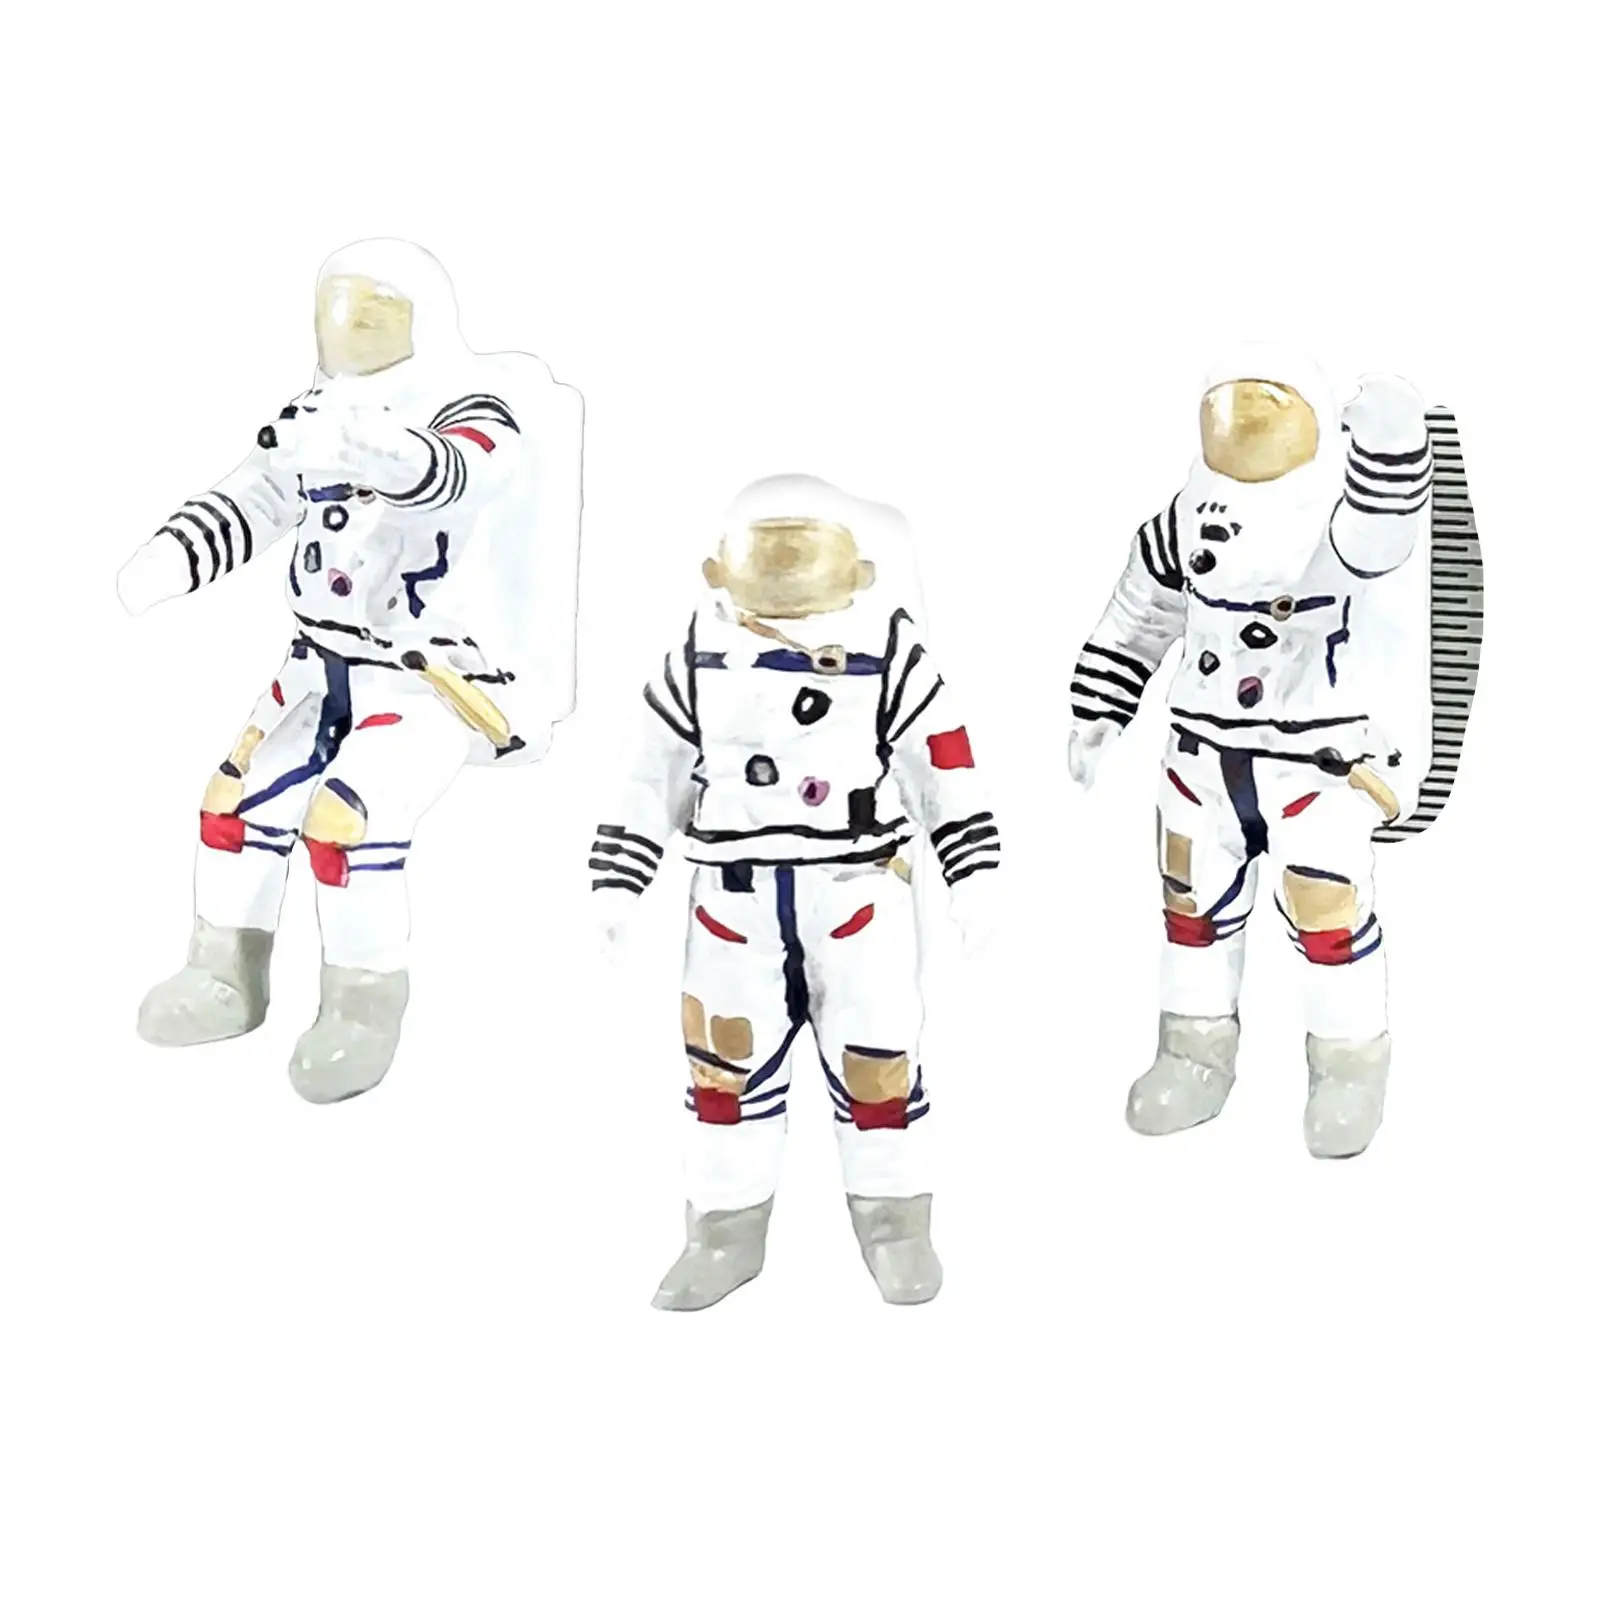 3 Pieces 1/64 Scale Astronaut Figurines Miniature Astronaut Action Figure Mini Astronaut Toys for Micro Landscapes Decoration